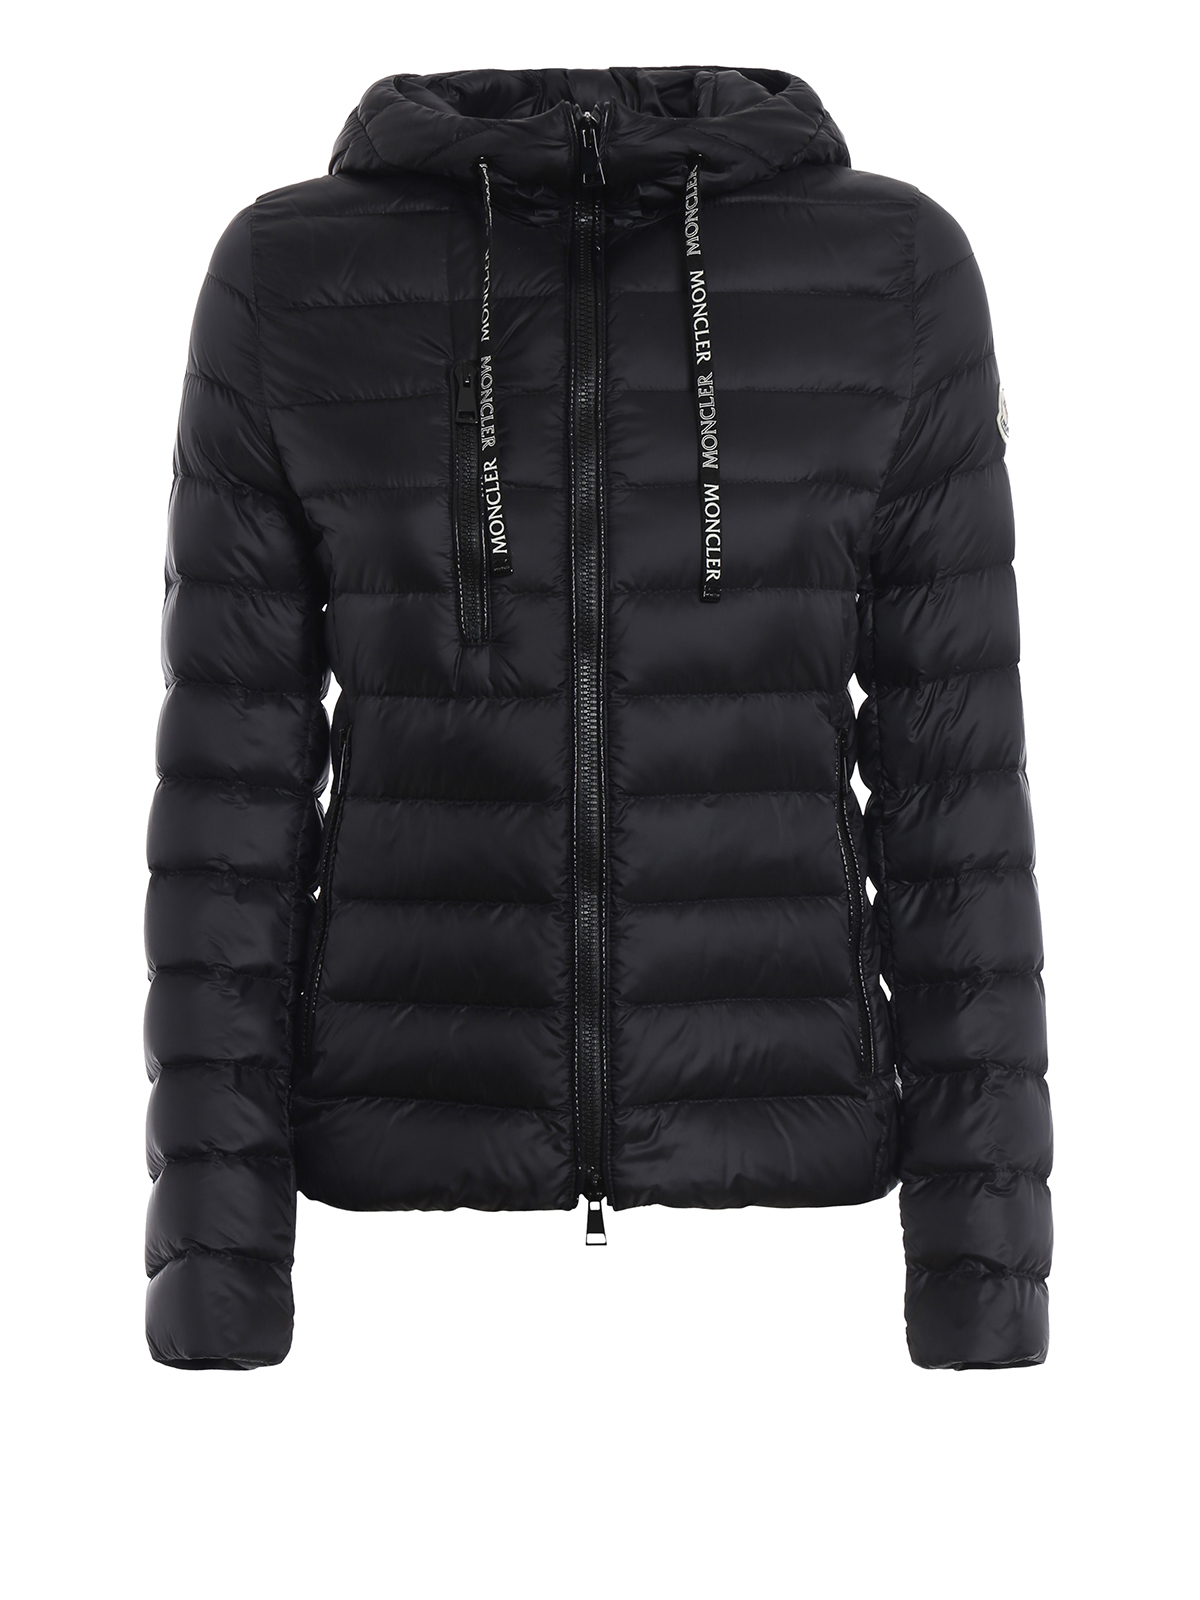 Seoul black hooded puffer jacket 